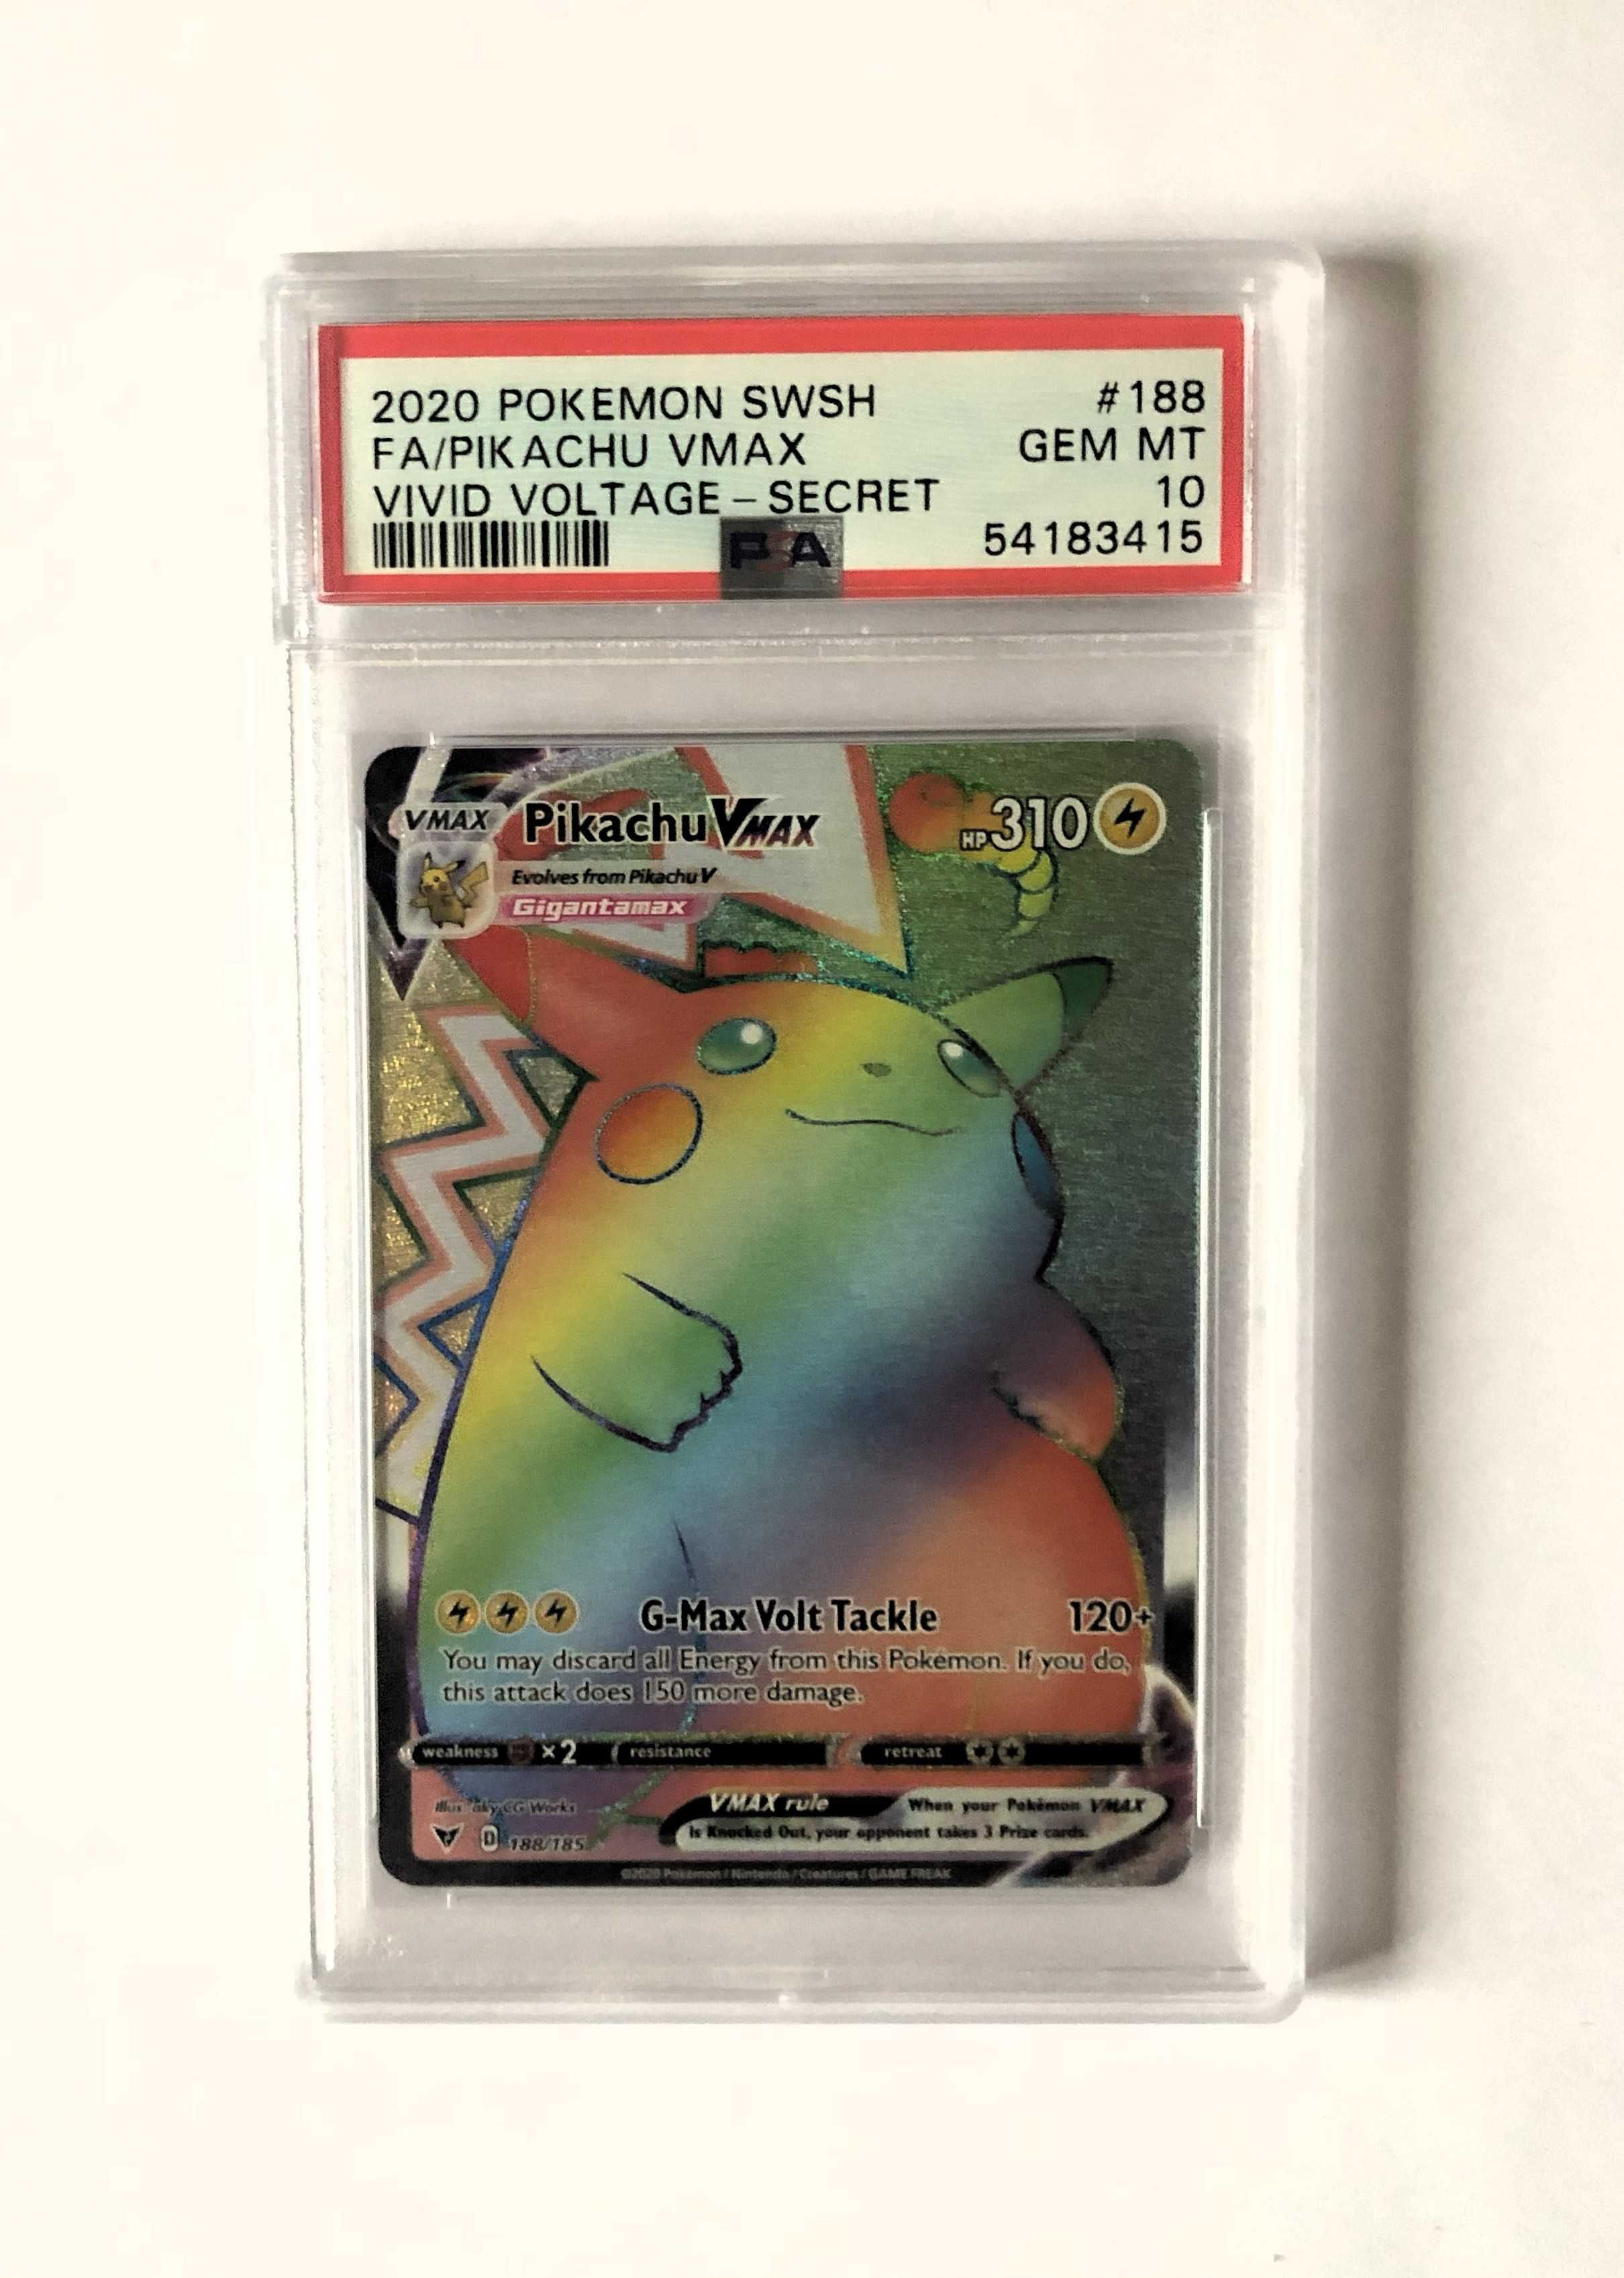 PSA 10 Pokemon Pikachu VMAX 2020 SWSH Vivid Voltage 188/185 Secret FA